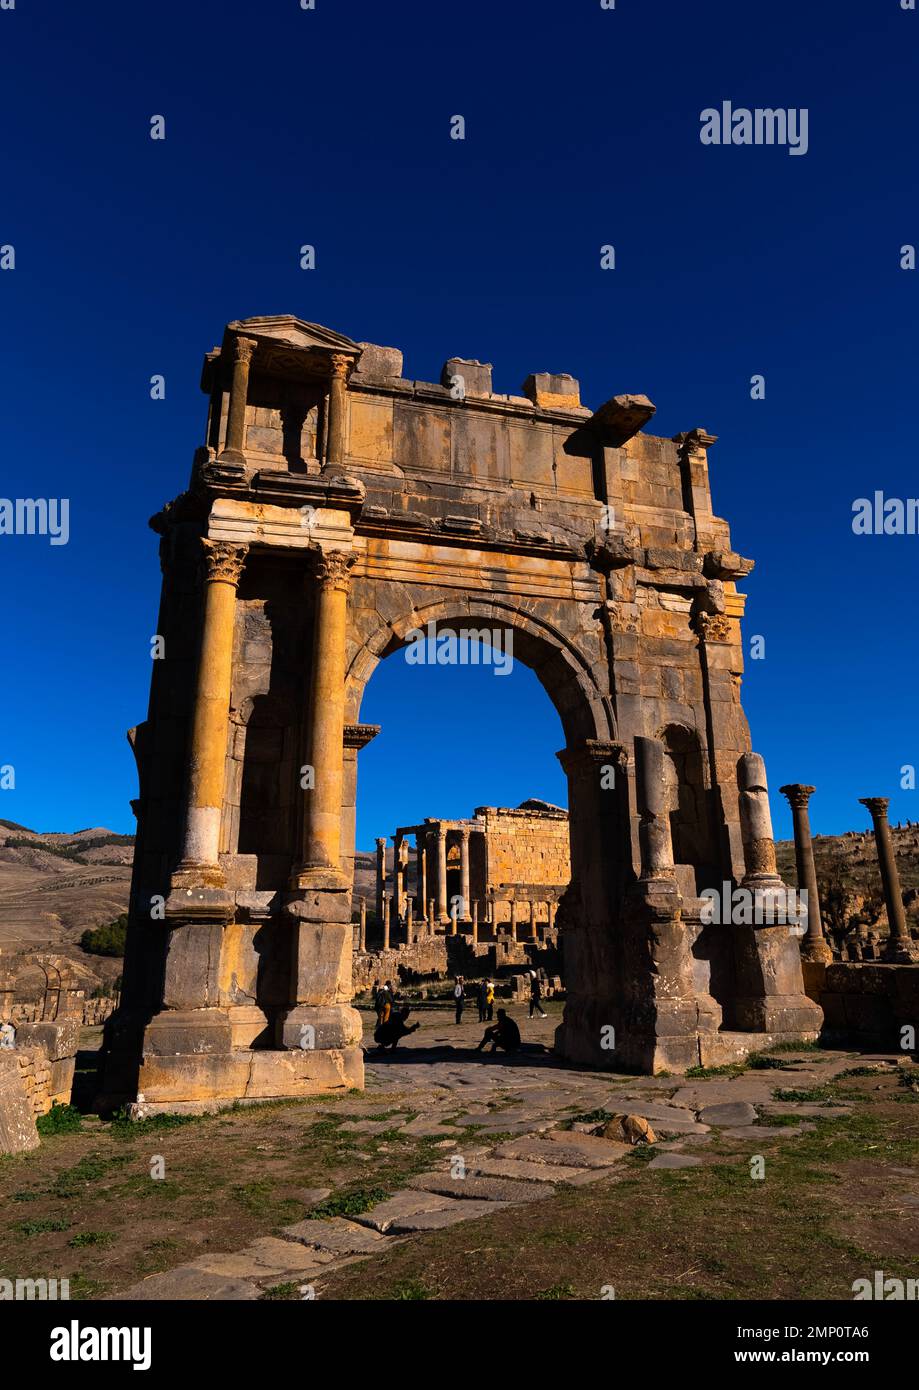 Der Arch von Caracalla in den römischen Ruinen, Nordafrika, Djemila, Algerien Stockfoto